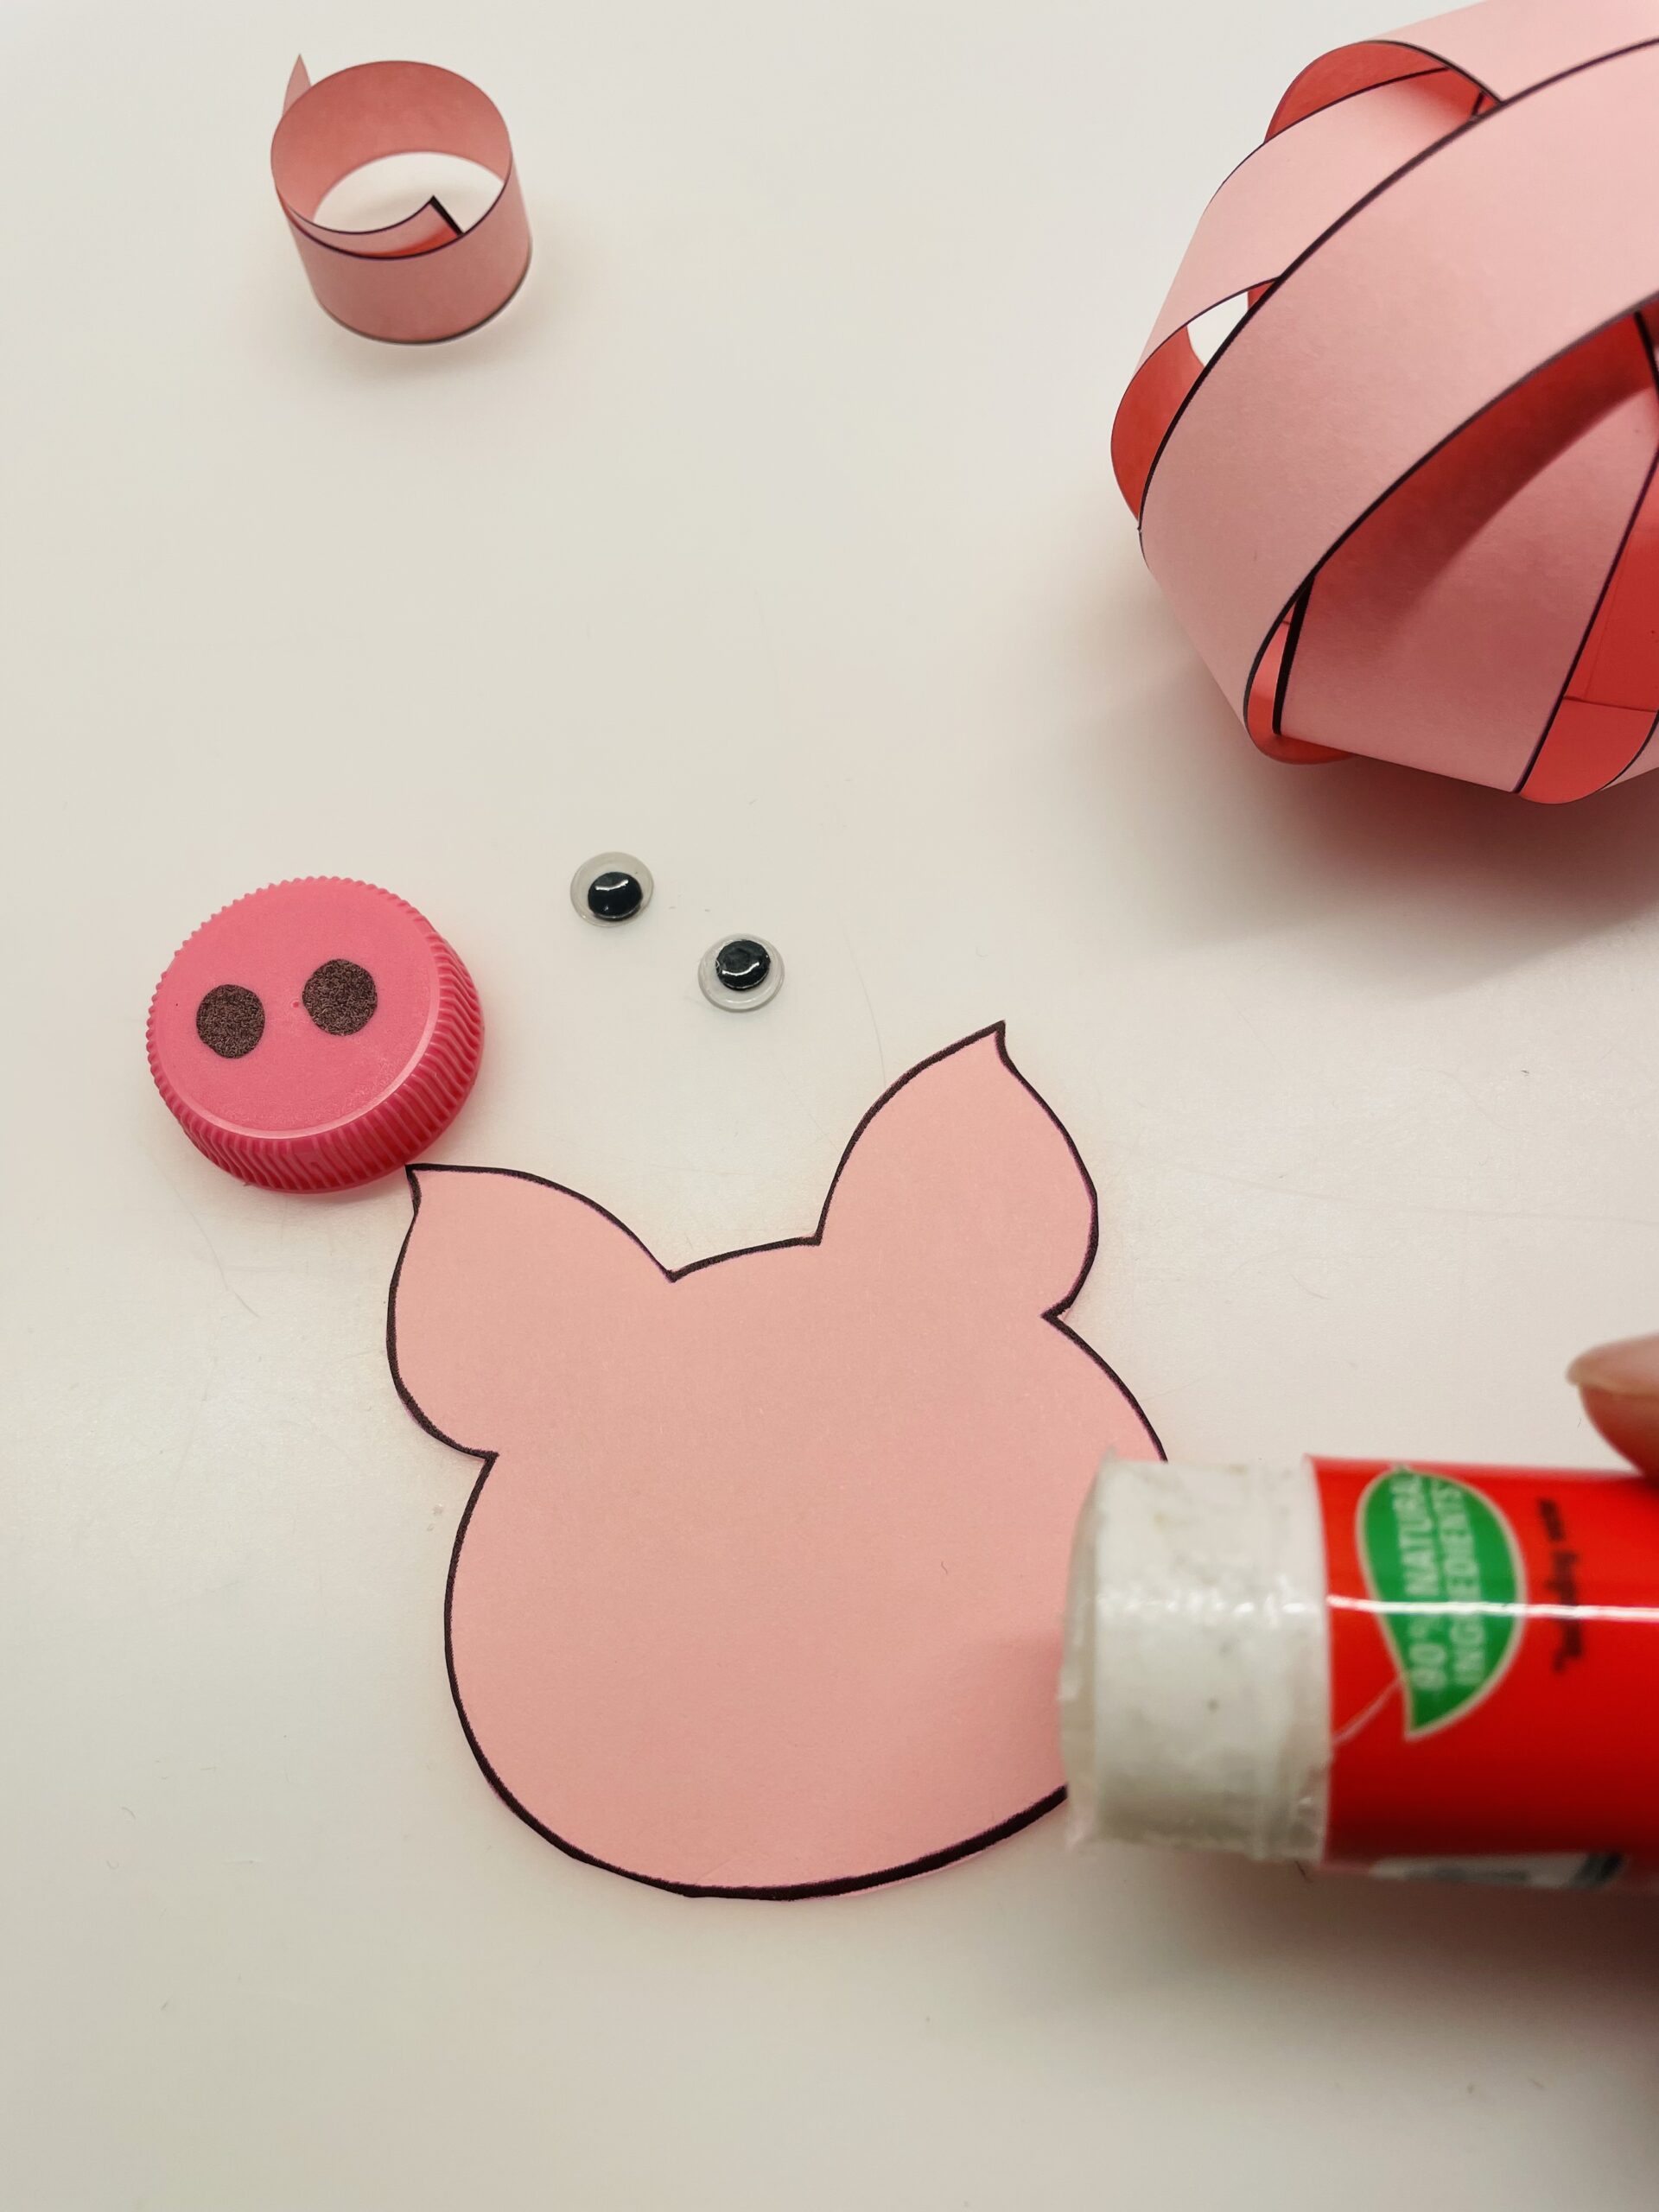 Bild zum Schritt 23 für das Bastel- und DIY-Abenteuer für Kinder: 'Malt euch nun einen Schweinekopf auf und schneidet diesen aus...'